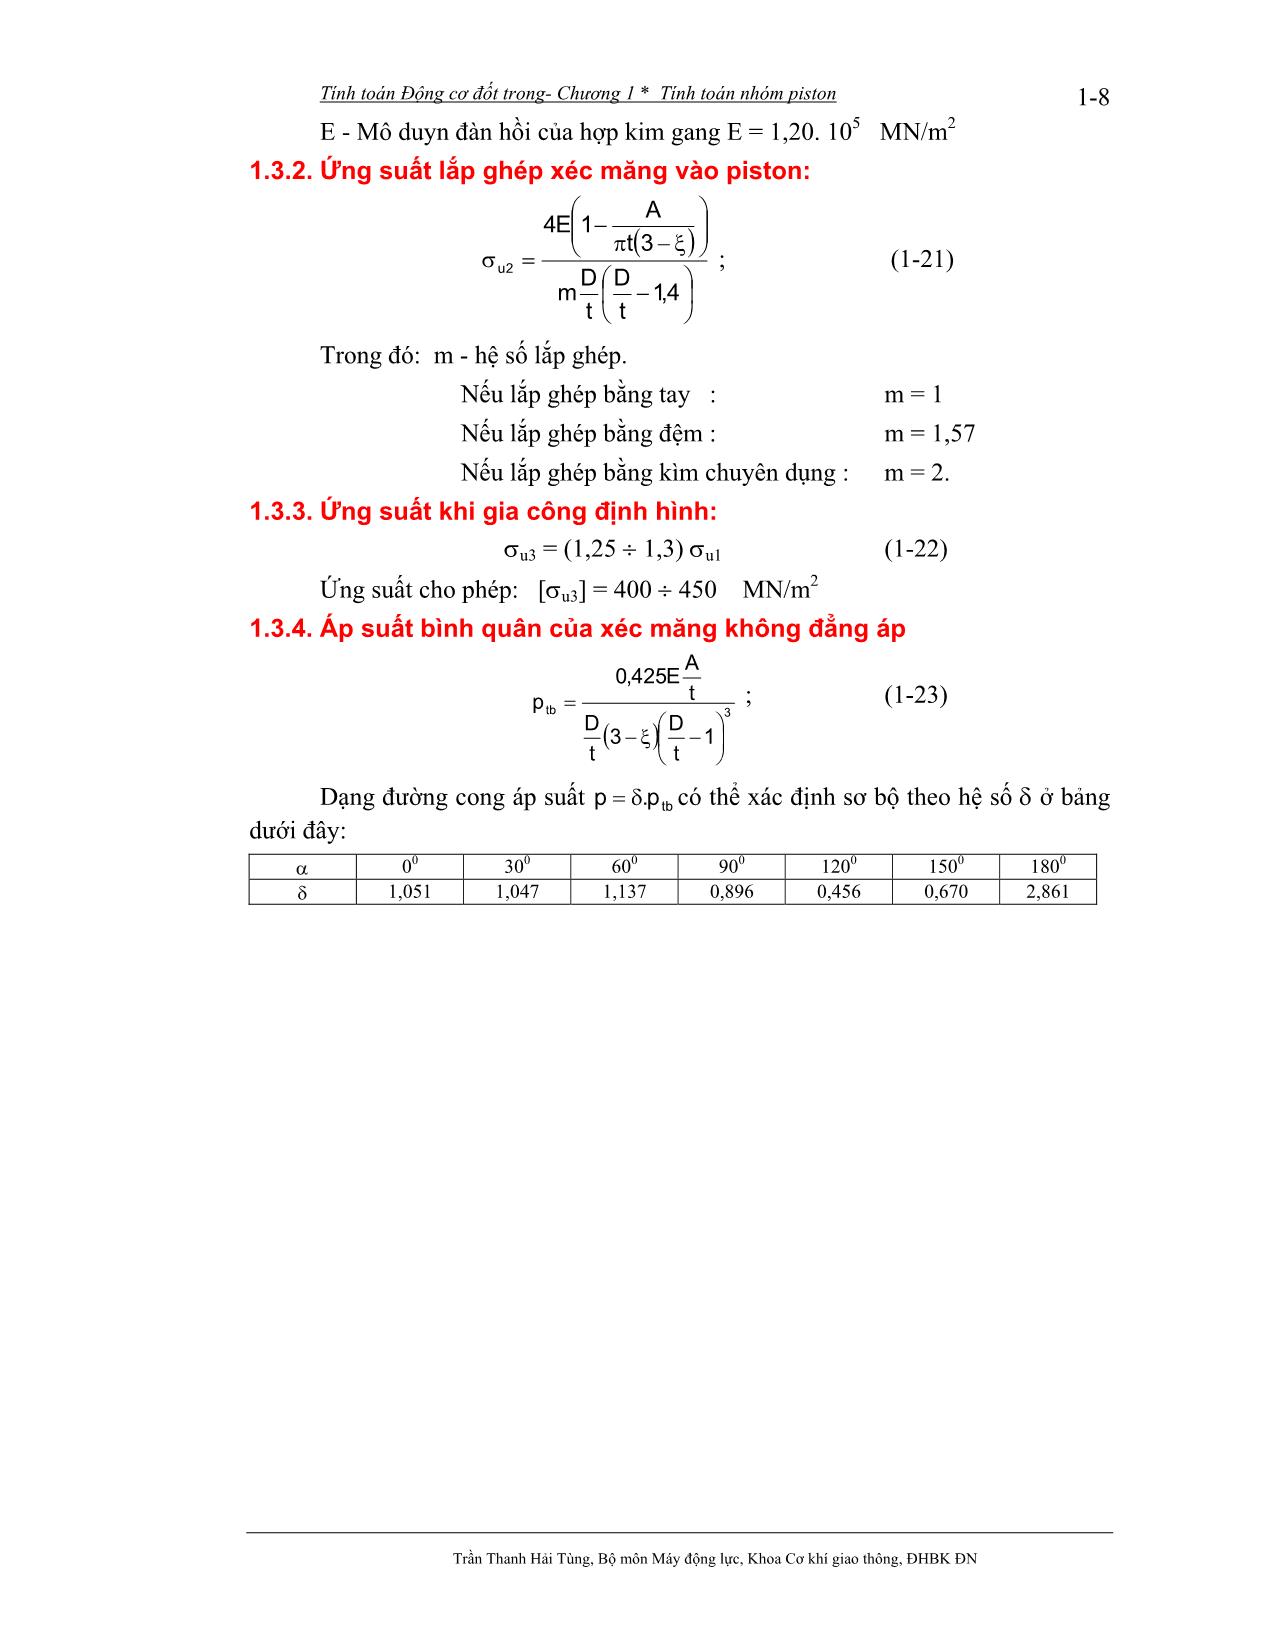 Bài giảng Tính toán thiết kế động cơ đốt trong - Trần Thanh Hải Tùng trang 9